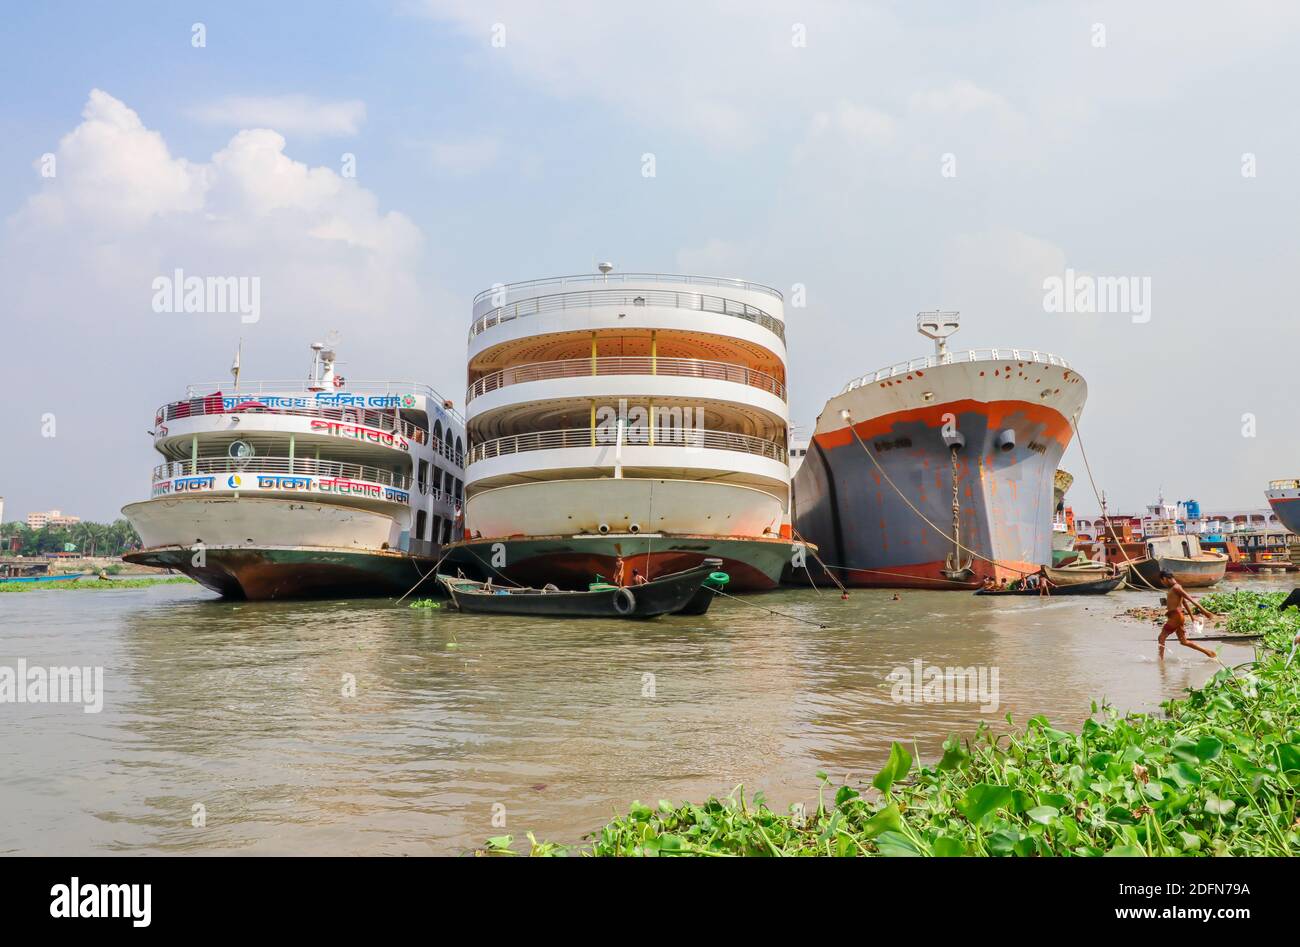 Dhaka, Bangladesh : Story around the dockyard situated on the banks of Buriganga river Stock Photo